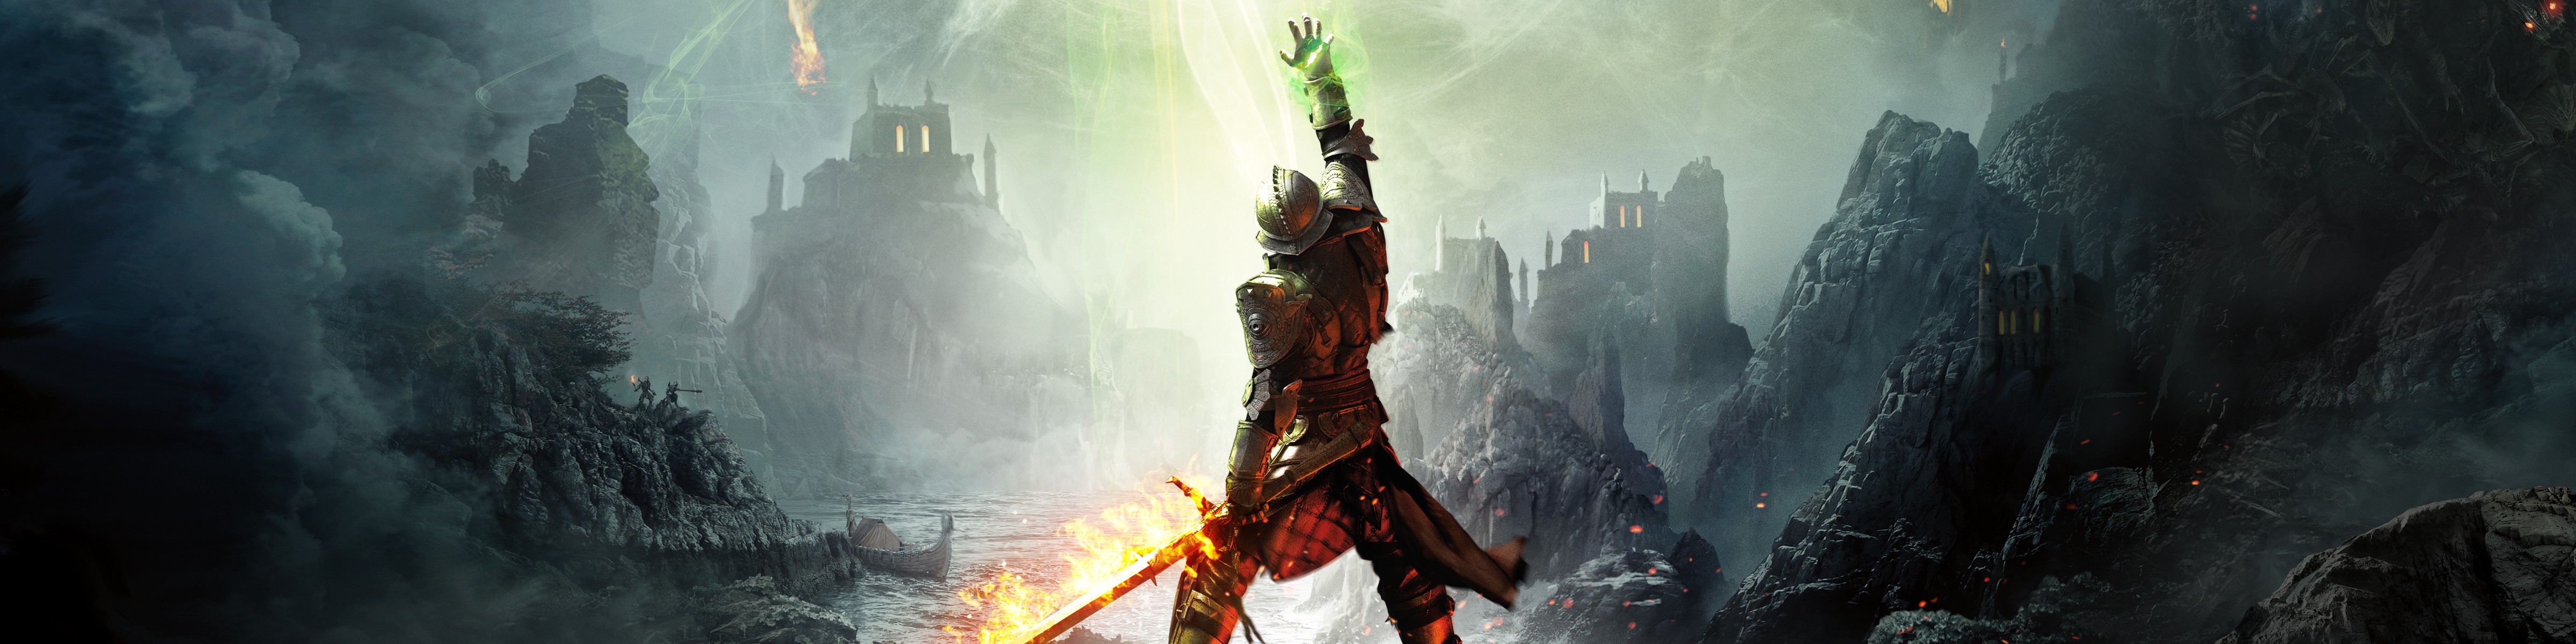 Dragon Age™: Inquisition DLC Bundle for PC | Origin